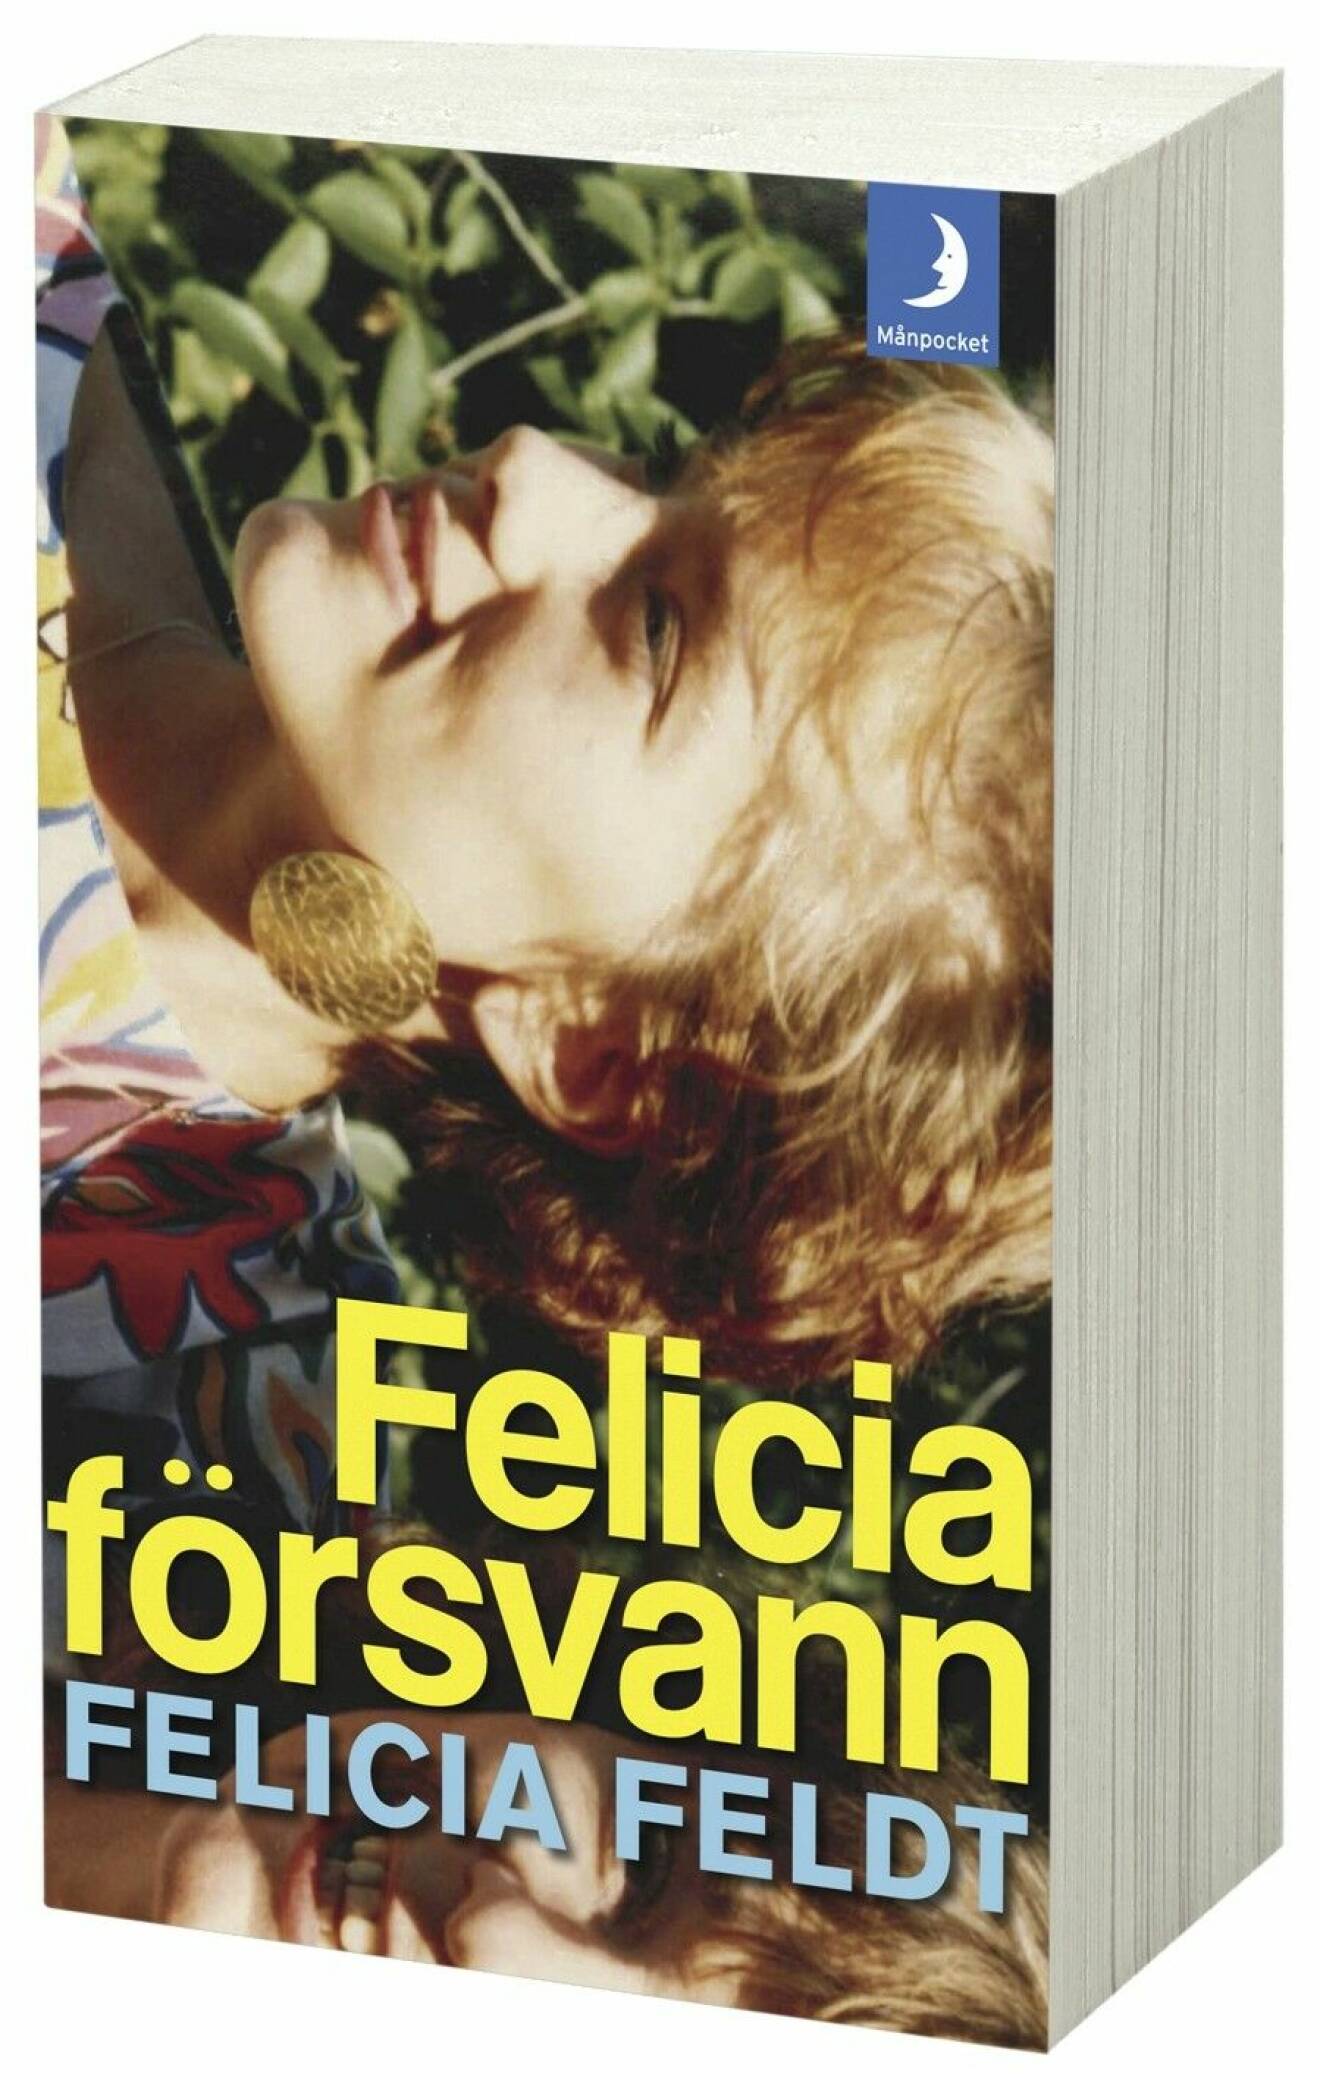 Felicia försvann av Felicia Feldt.